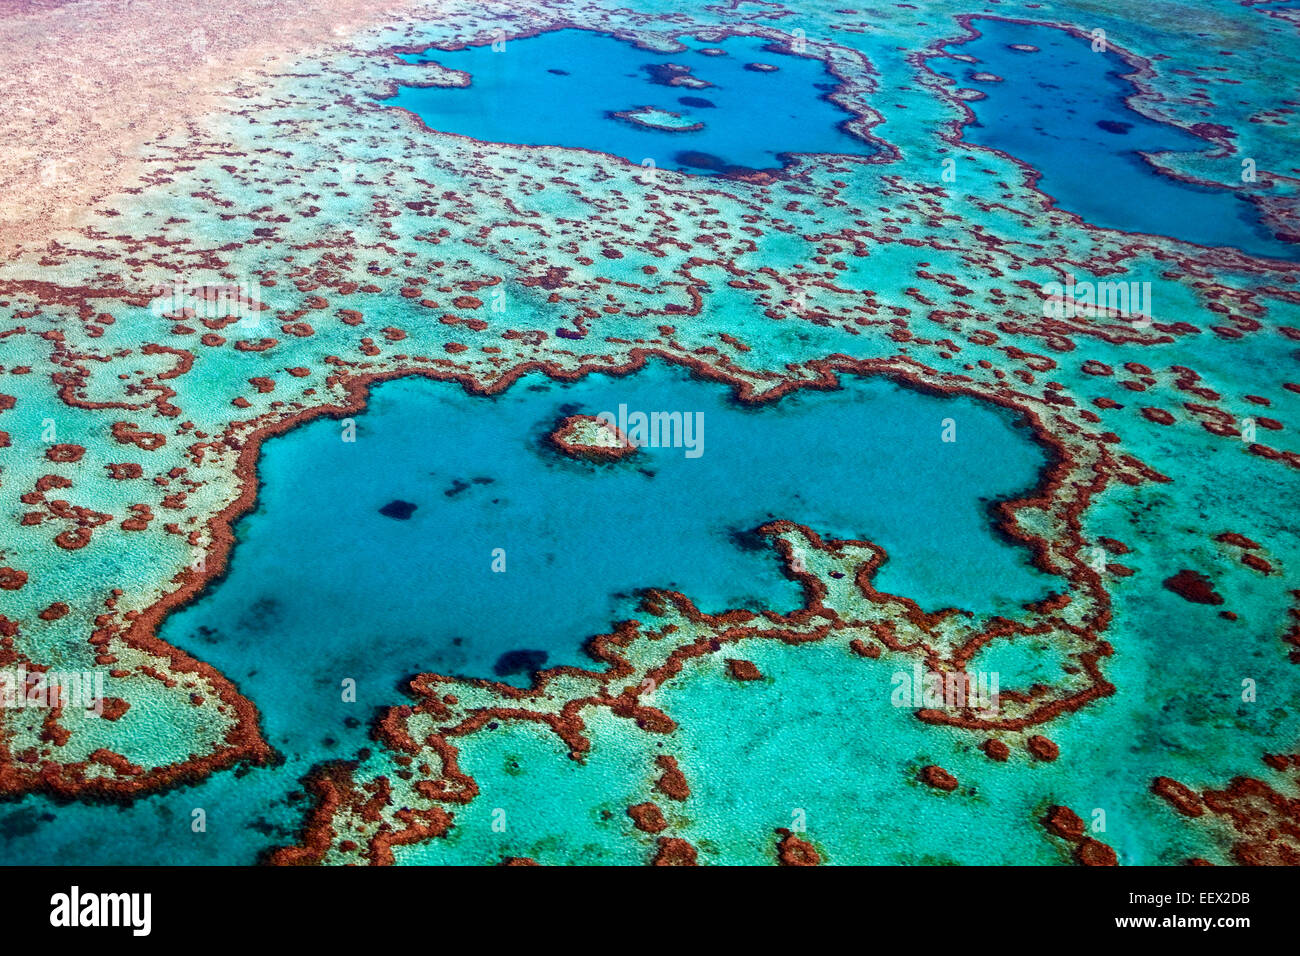 Luftaufnahme der Herzform Heart Reef, Teil des Great Barrier Reef von den Whitsundays im Korallenmeer, Queensland, Australien Stockfoto